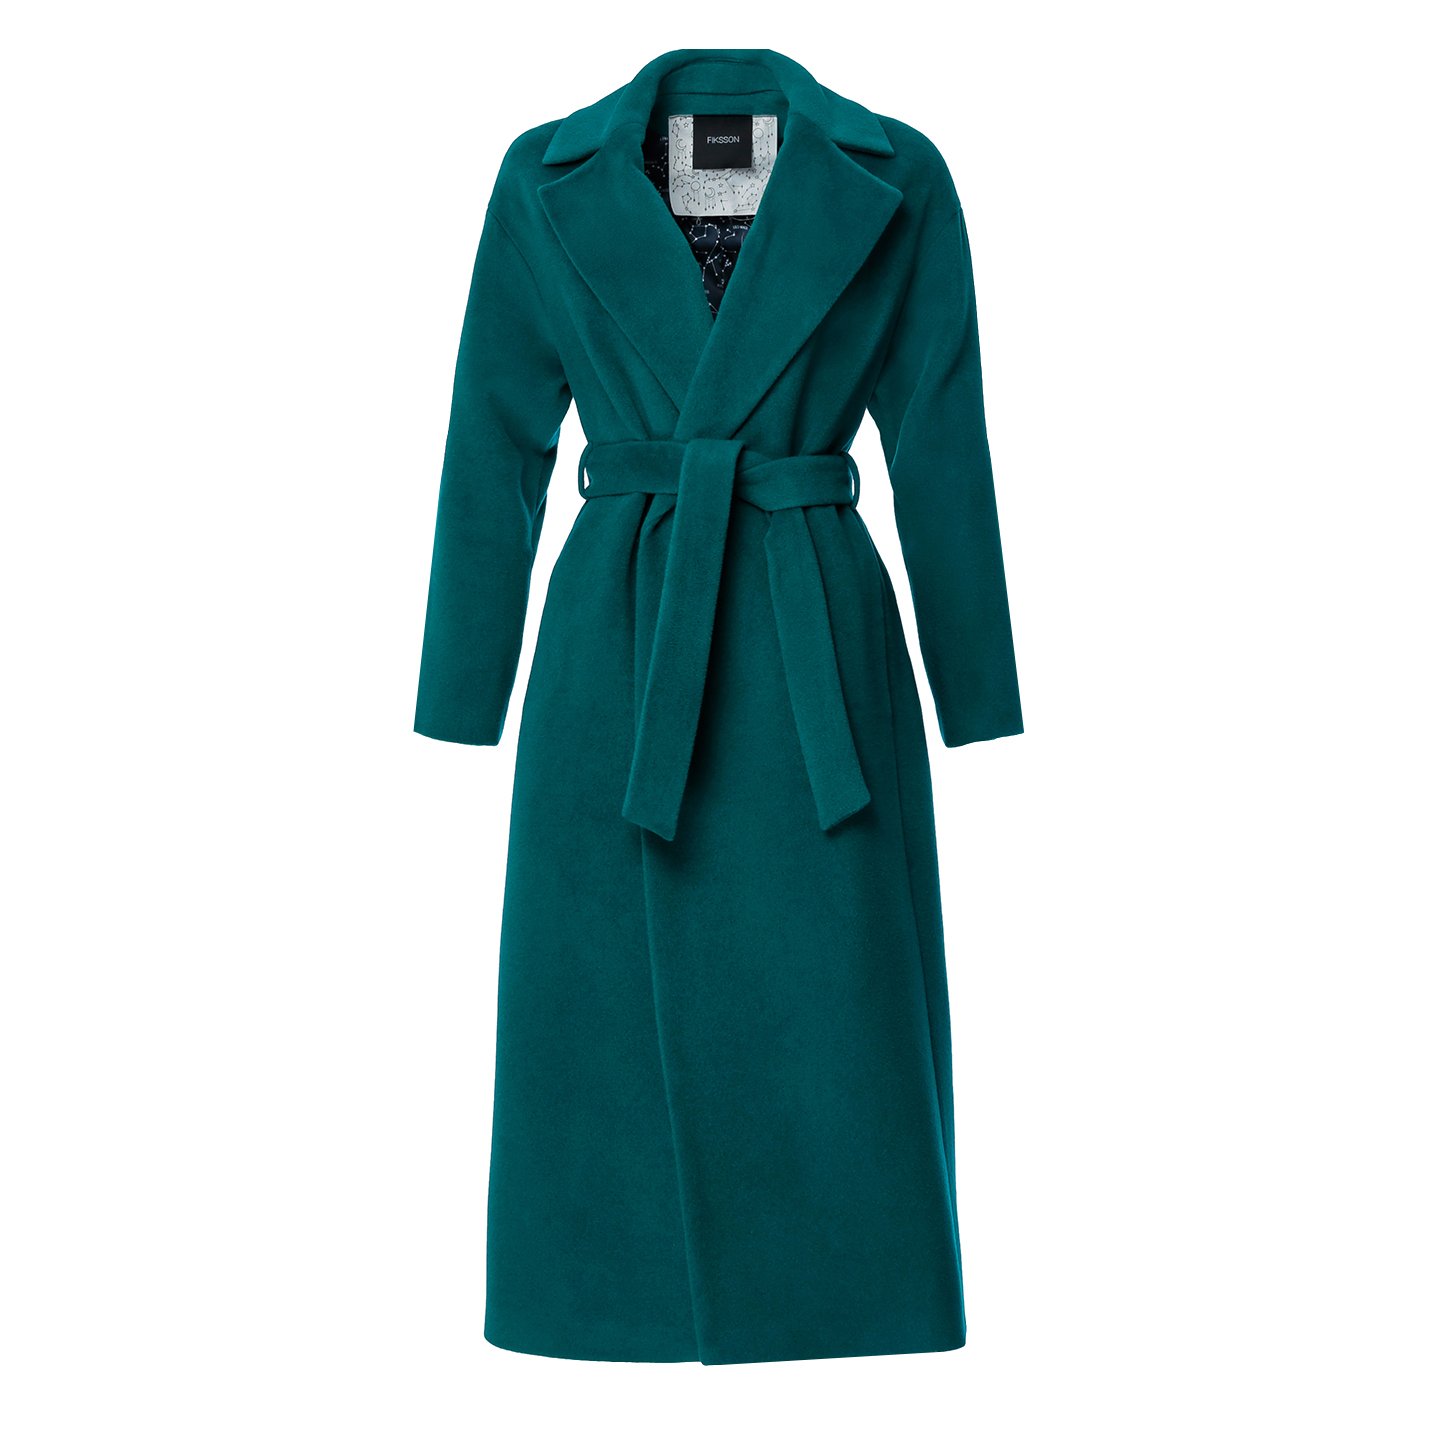 Купить одежду пальто. Зелёное пальто женские. Пальто женское зеленого цвета. Пальто изумрудного цвета.